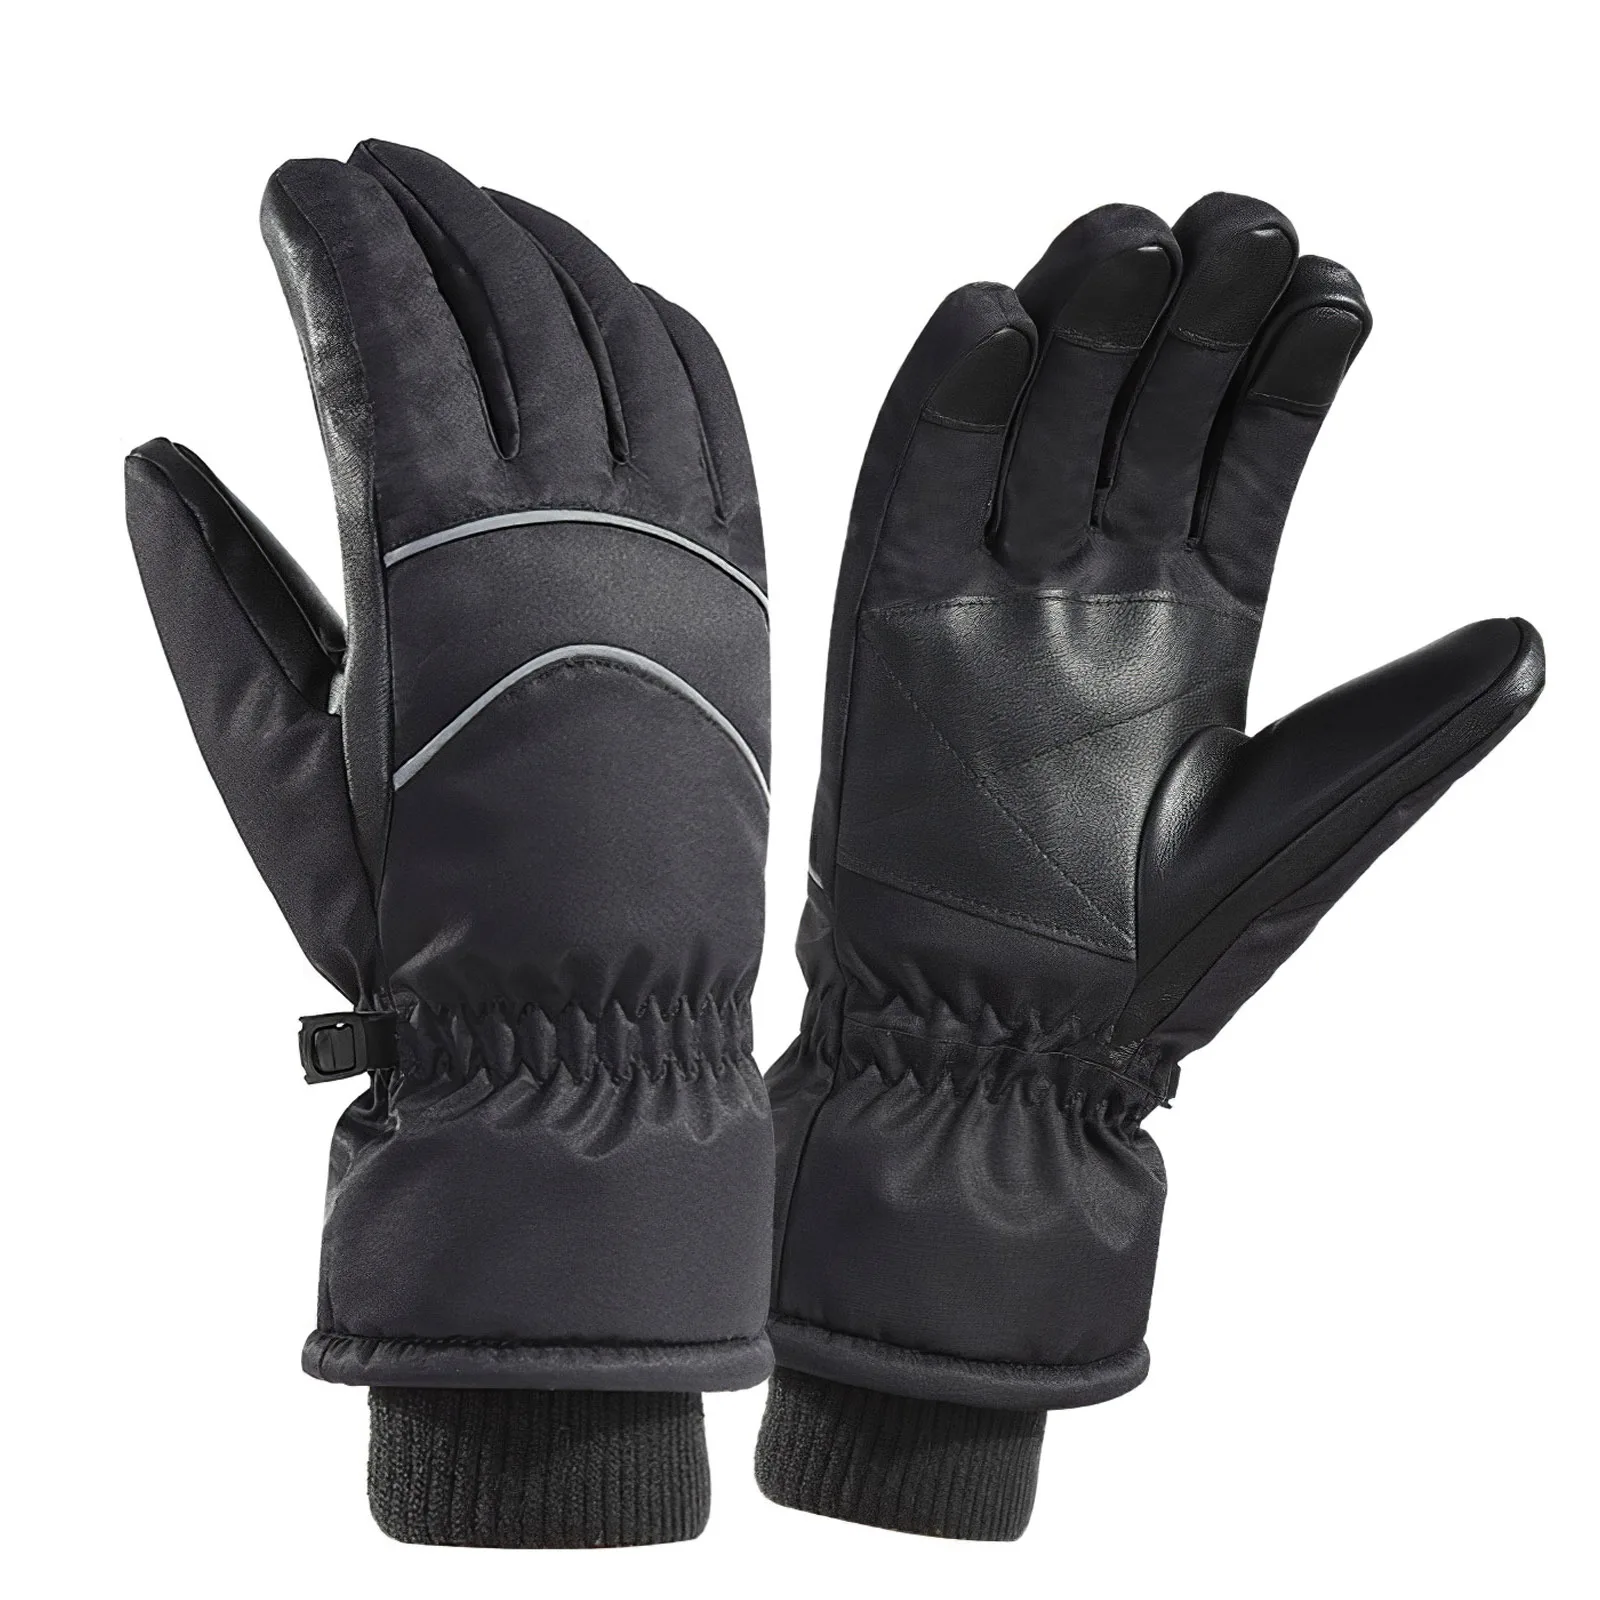 

Одна пара, зимние лыжные перчатки, многофункциональные водонепроницаемые термоперчатки, ветрозащитные теплые перчатки для активного отды...